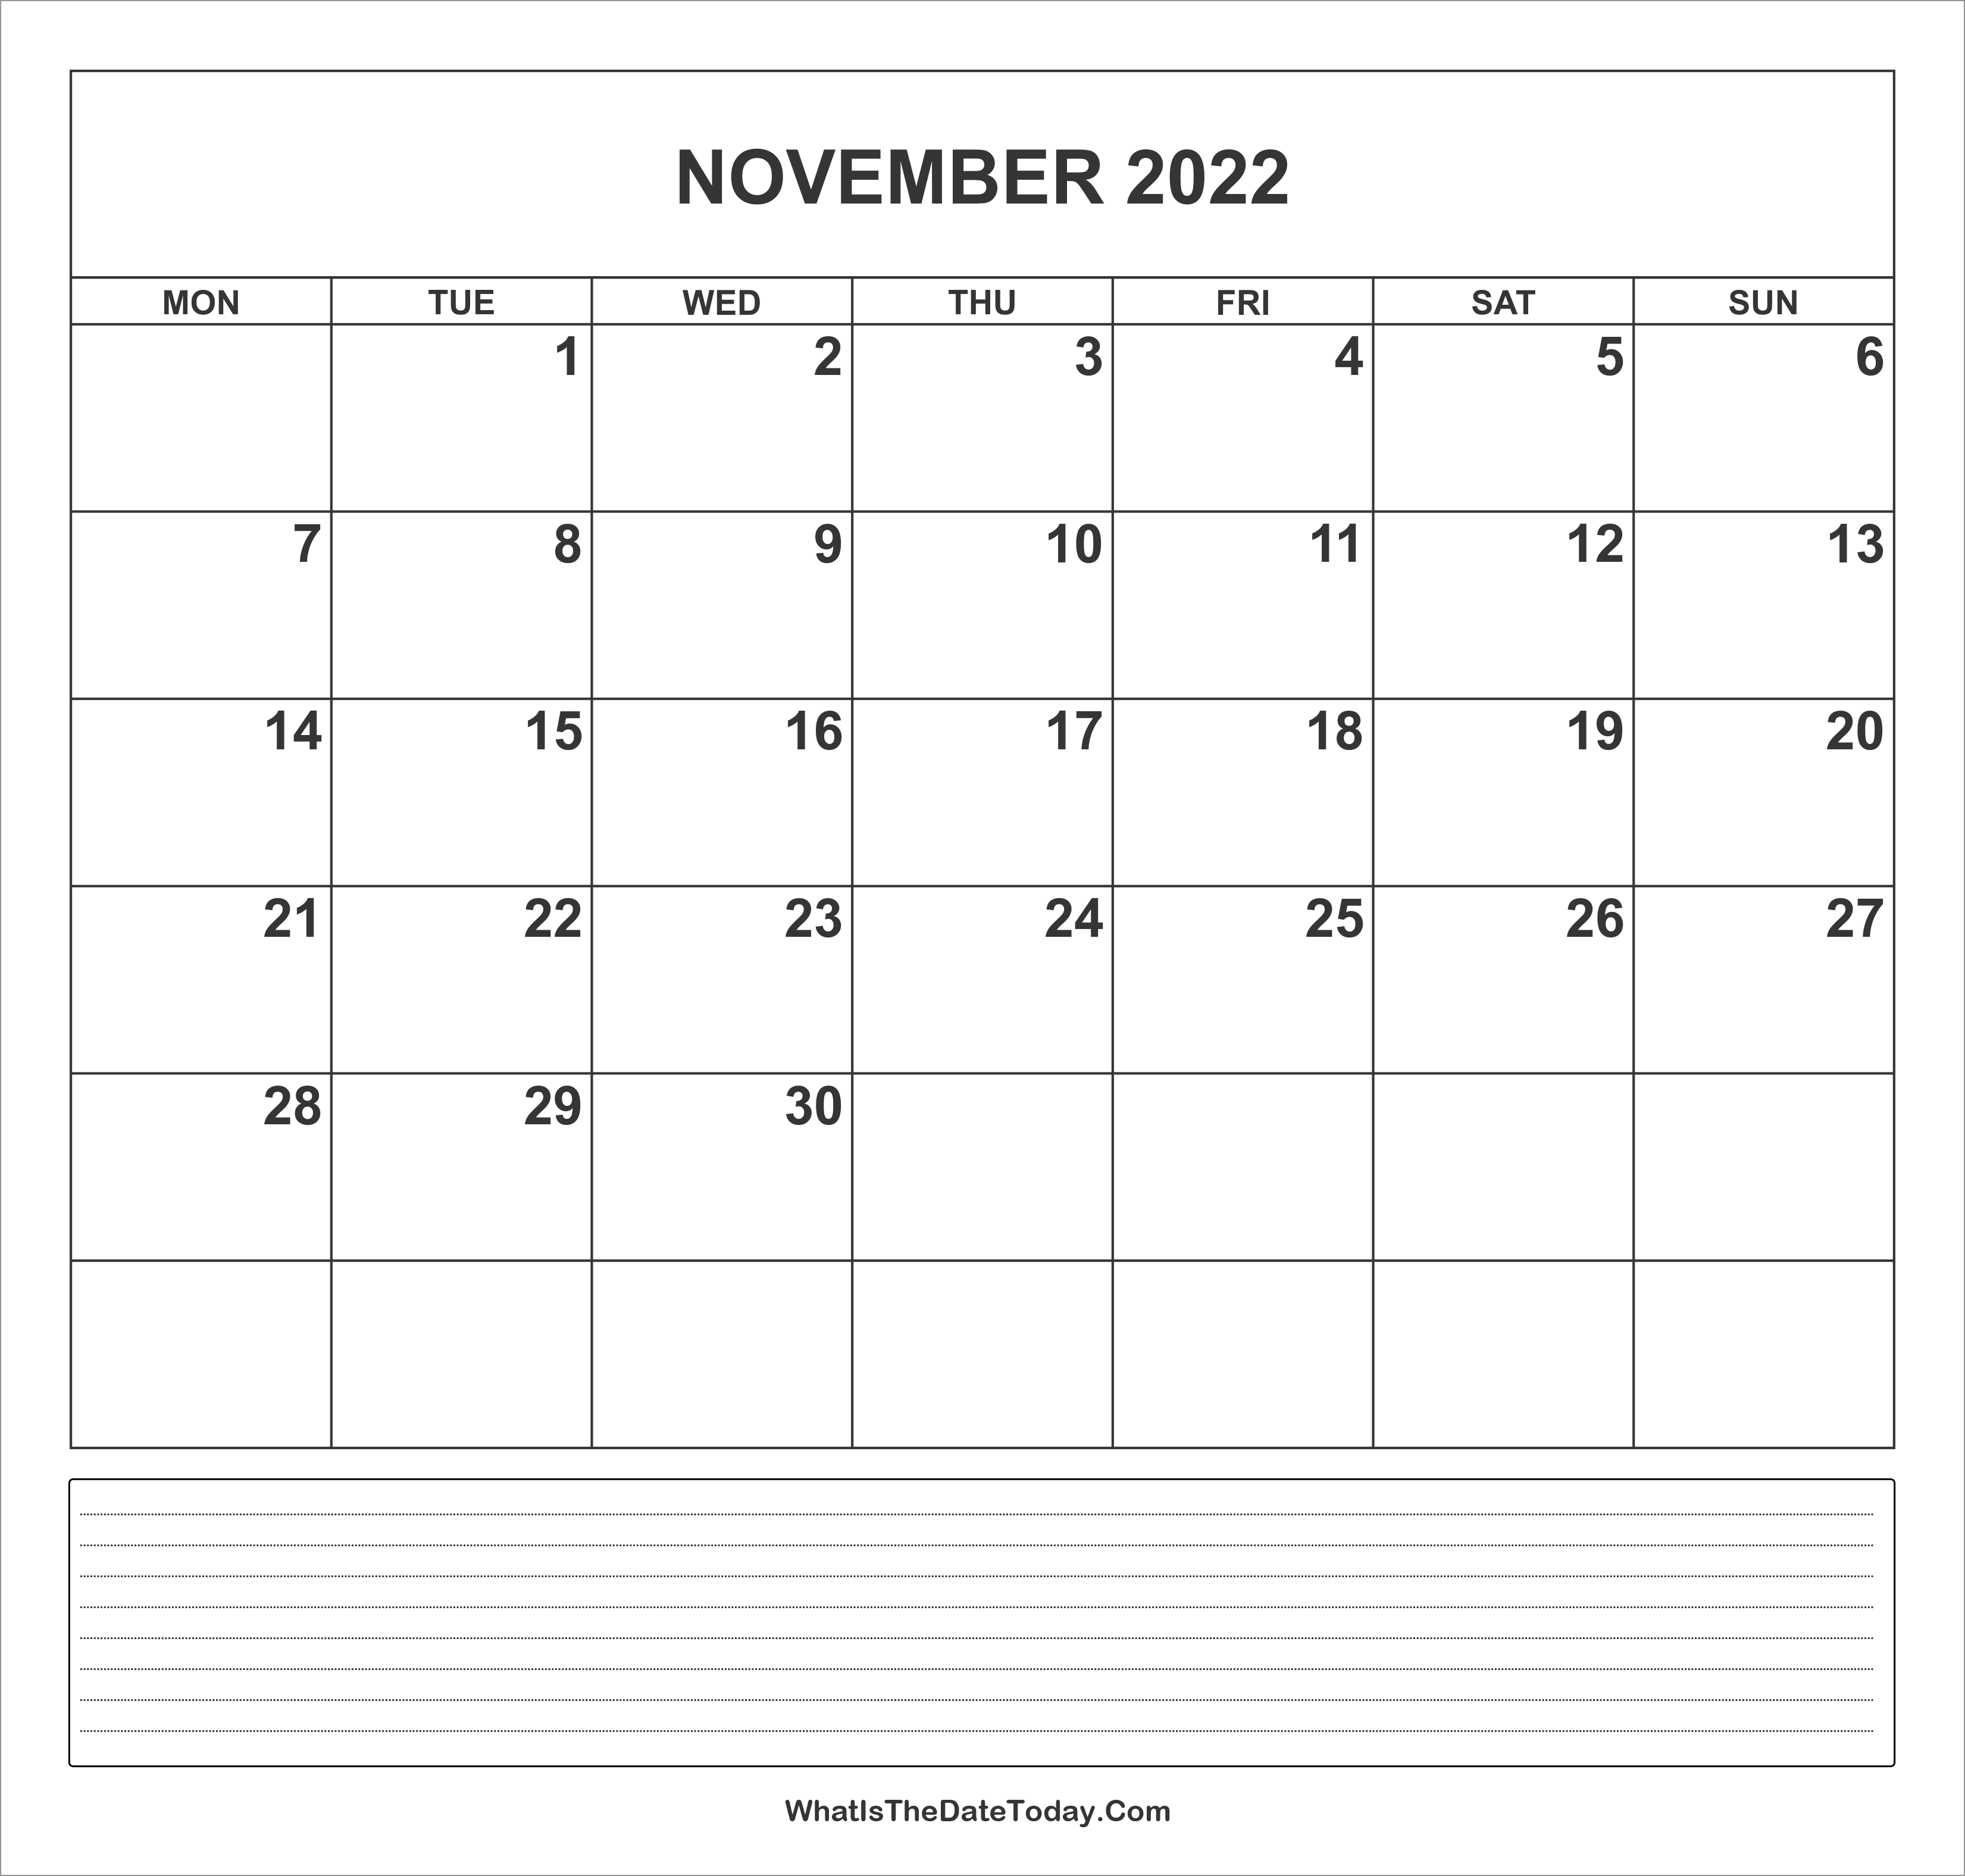 Nov Calendar 2022 Calendar November 2022 With Notes | Whatisthedatetoday.com